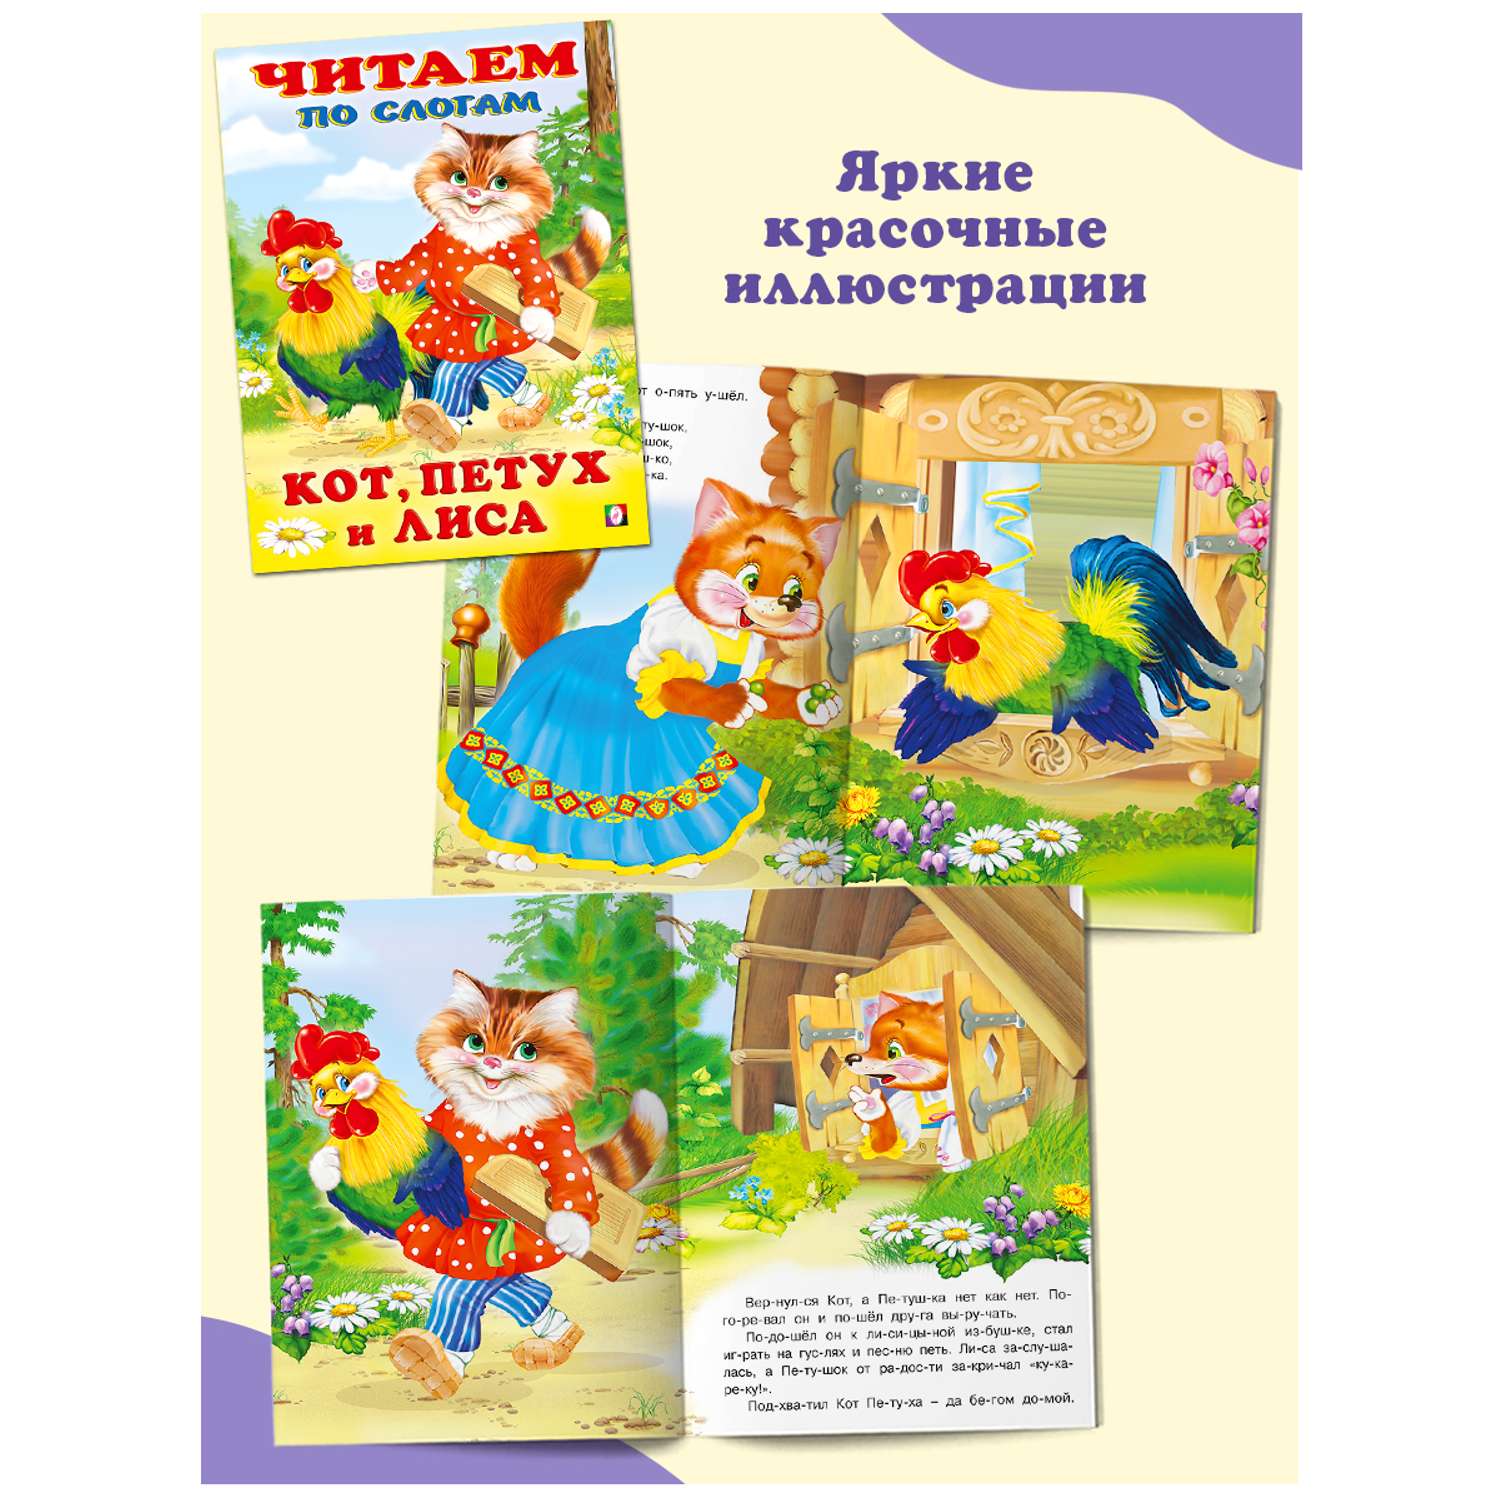 Комплект книг Фламинго Читаем по слогам Книги для малышей Русские народные и зарубежные сказки набор из 9 шт - фото 10